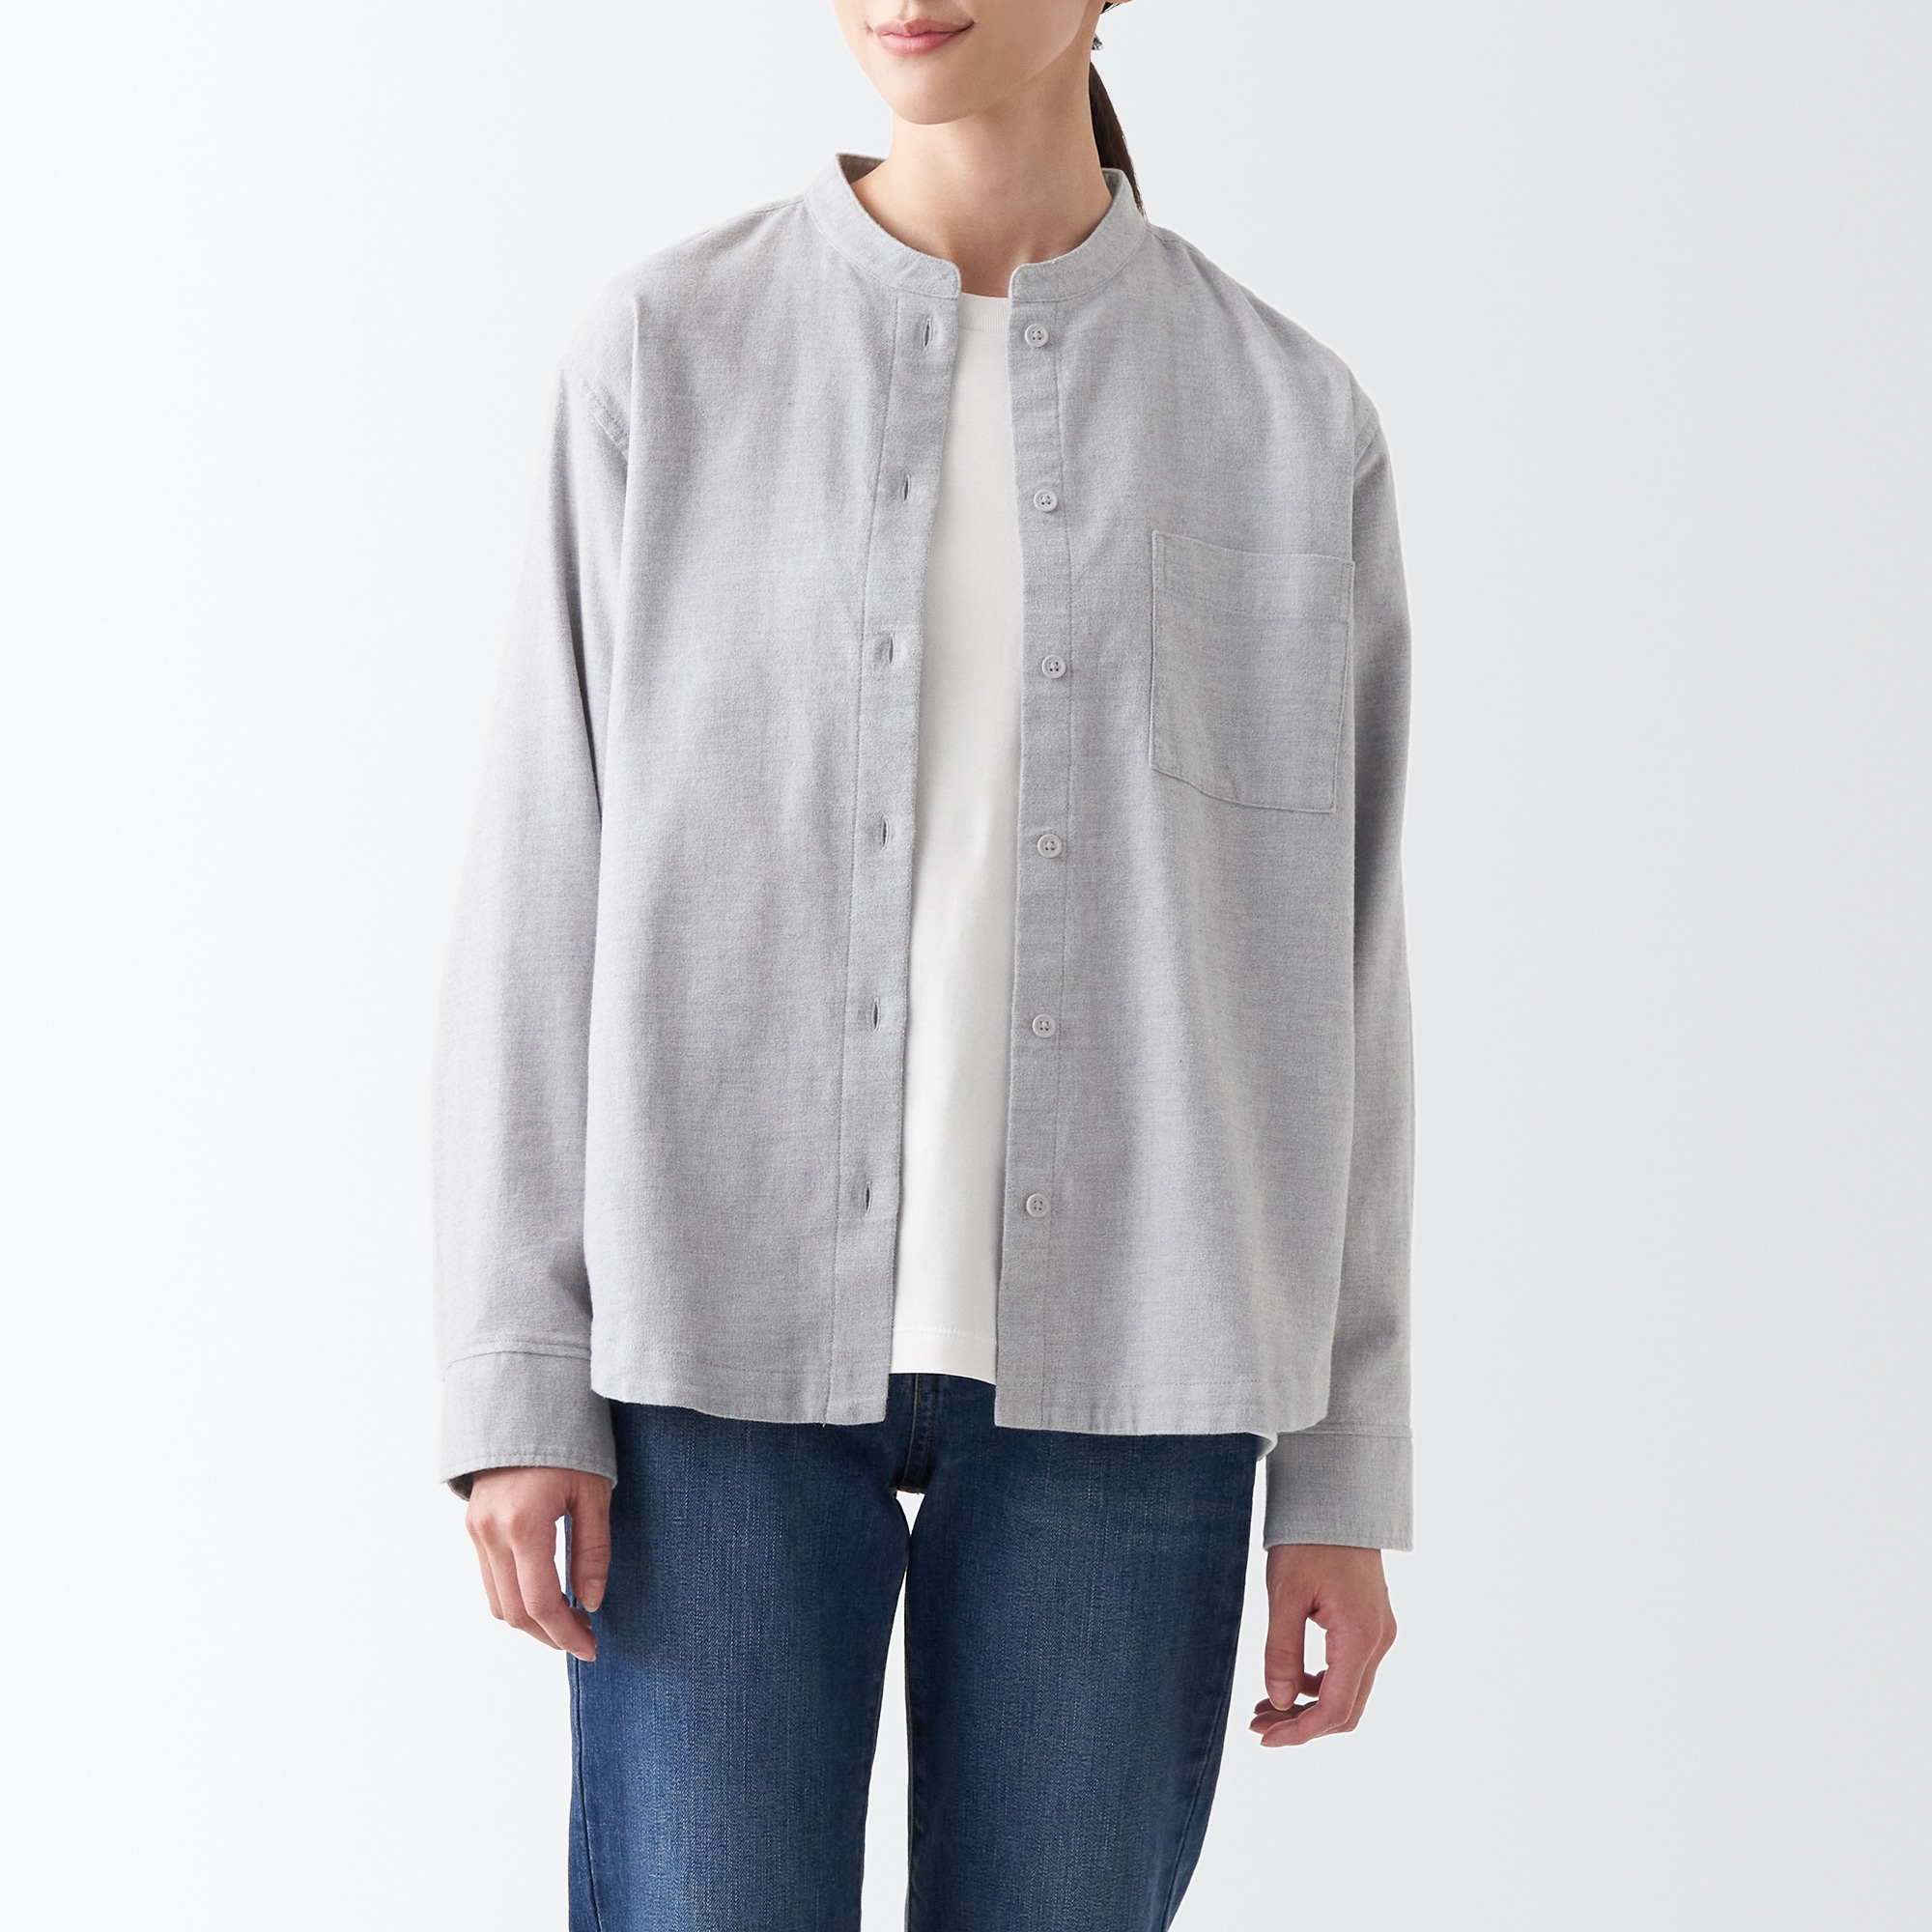 무인양품 일본 여성 긴팔 셔츠 양면 기모 플란넬 차이나카라 실버그레이